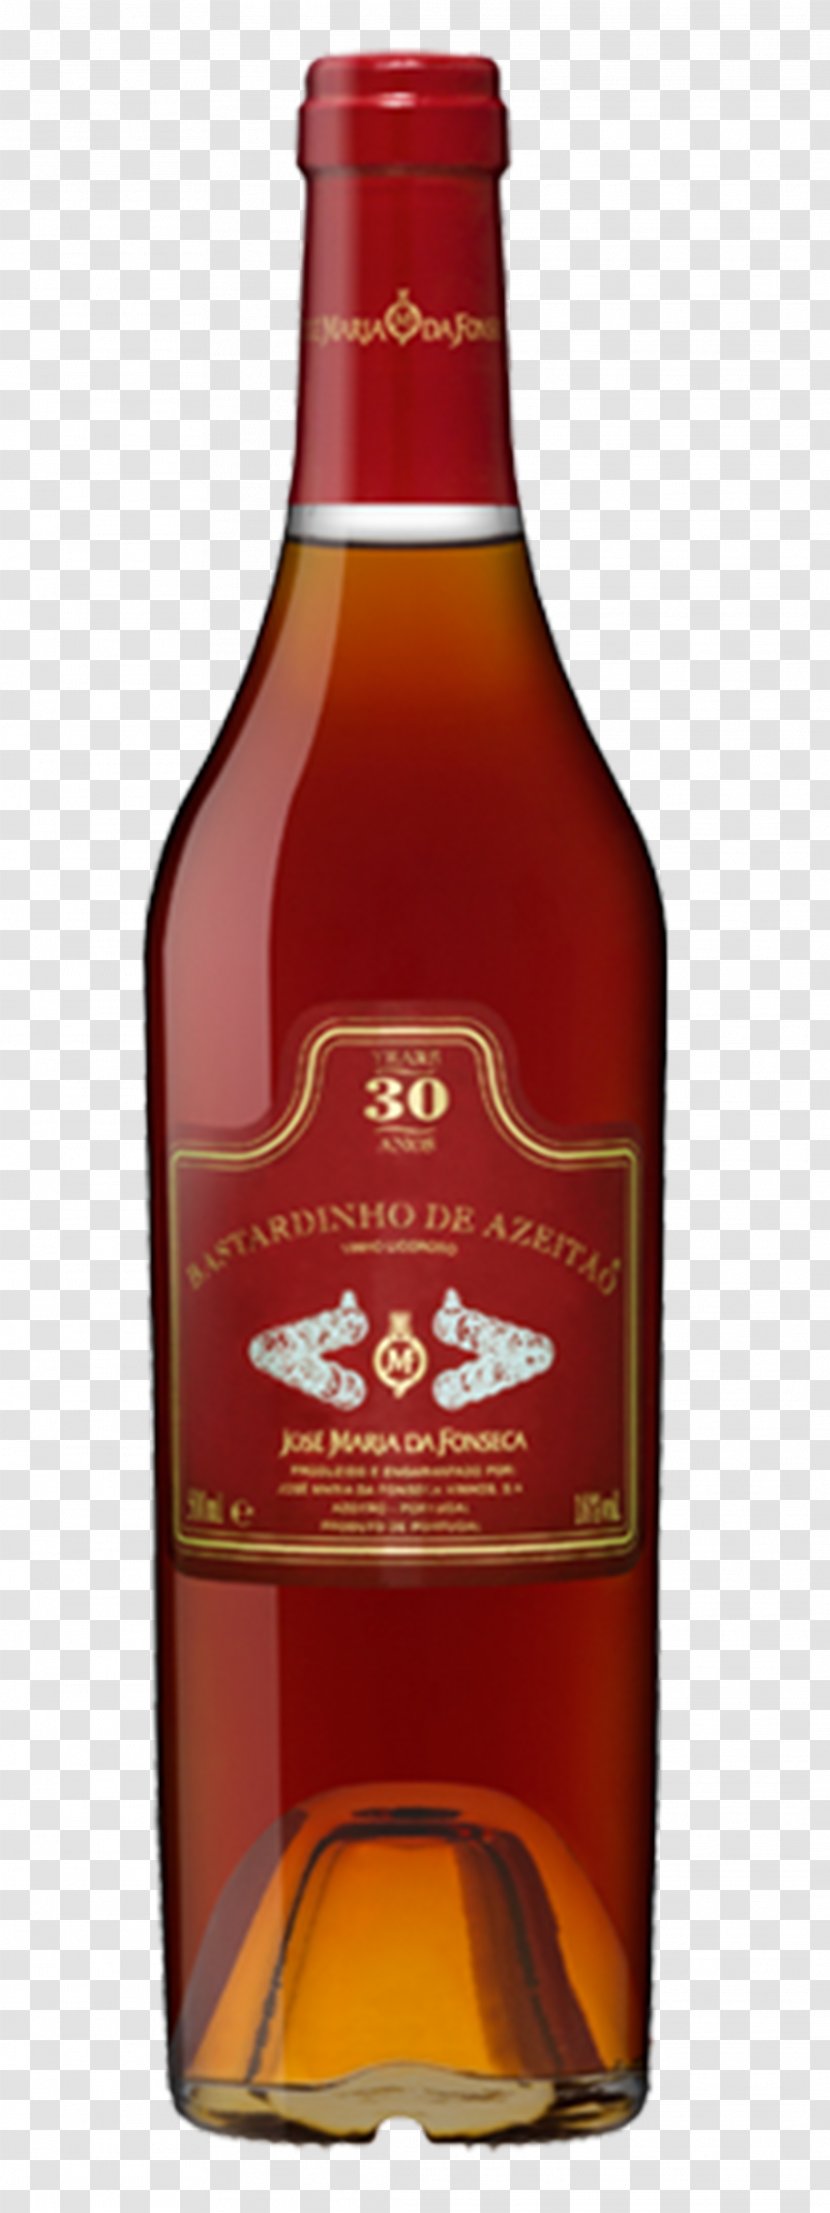 Liqueur Dessert Wine Glass Bottle Brandy - Distilled Beverage Transparent PNG